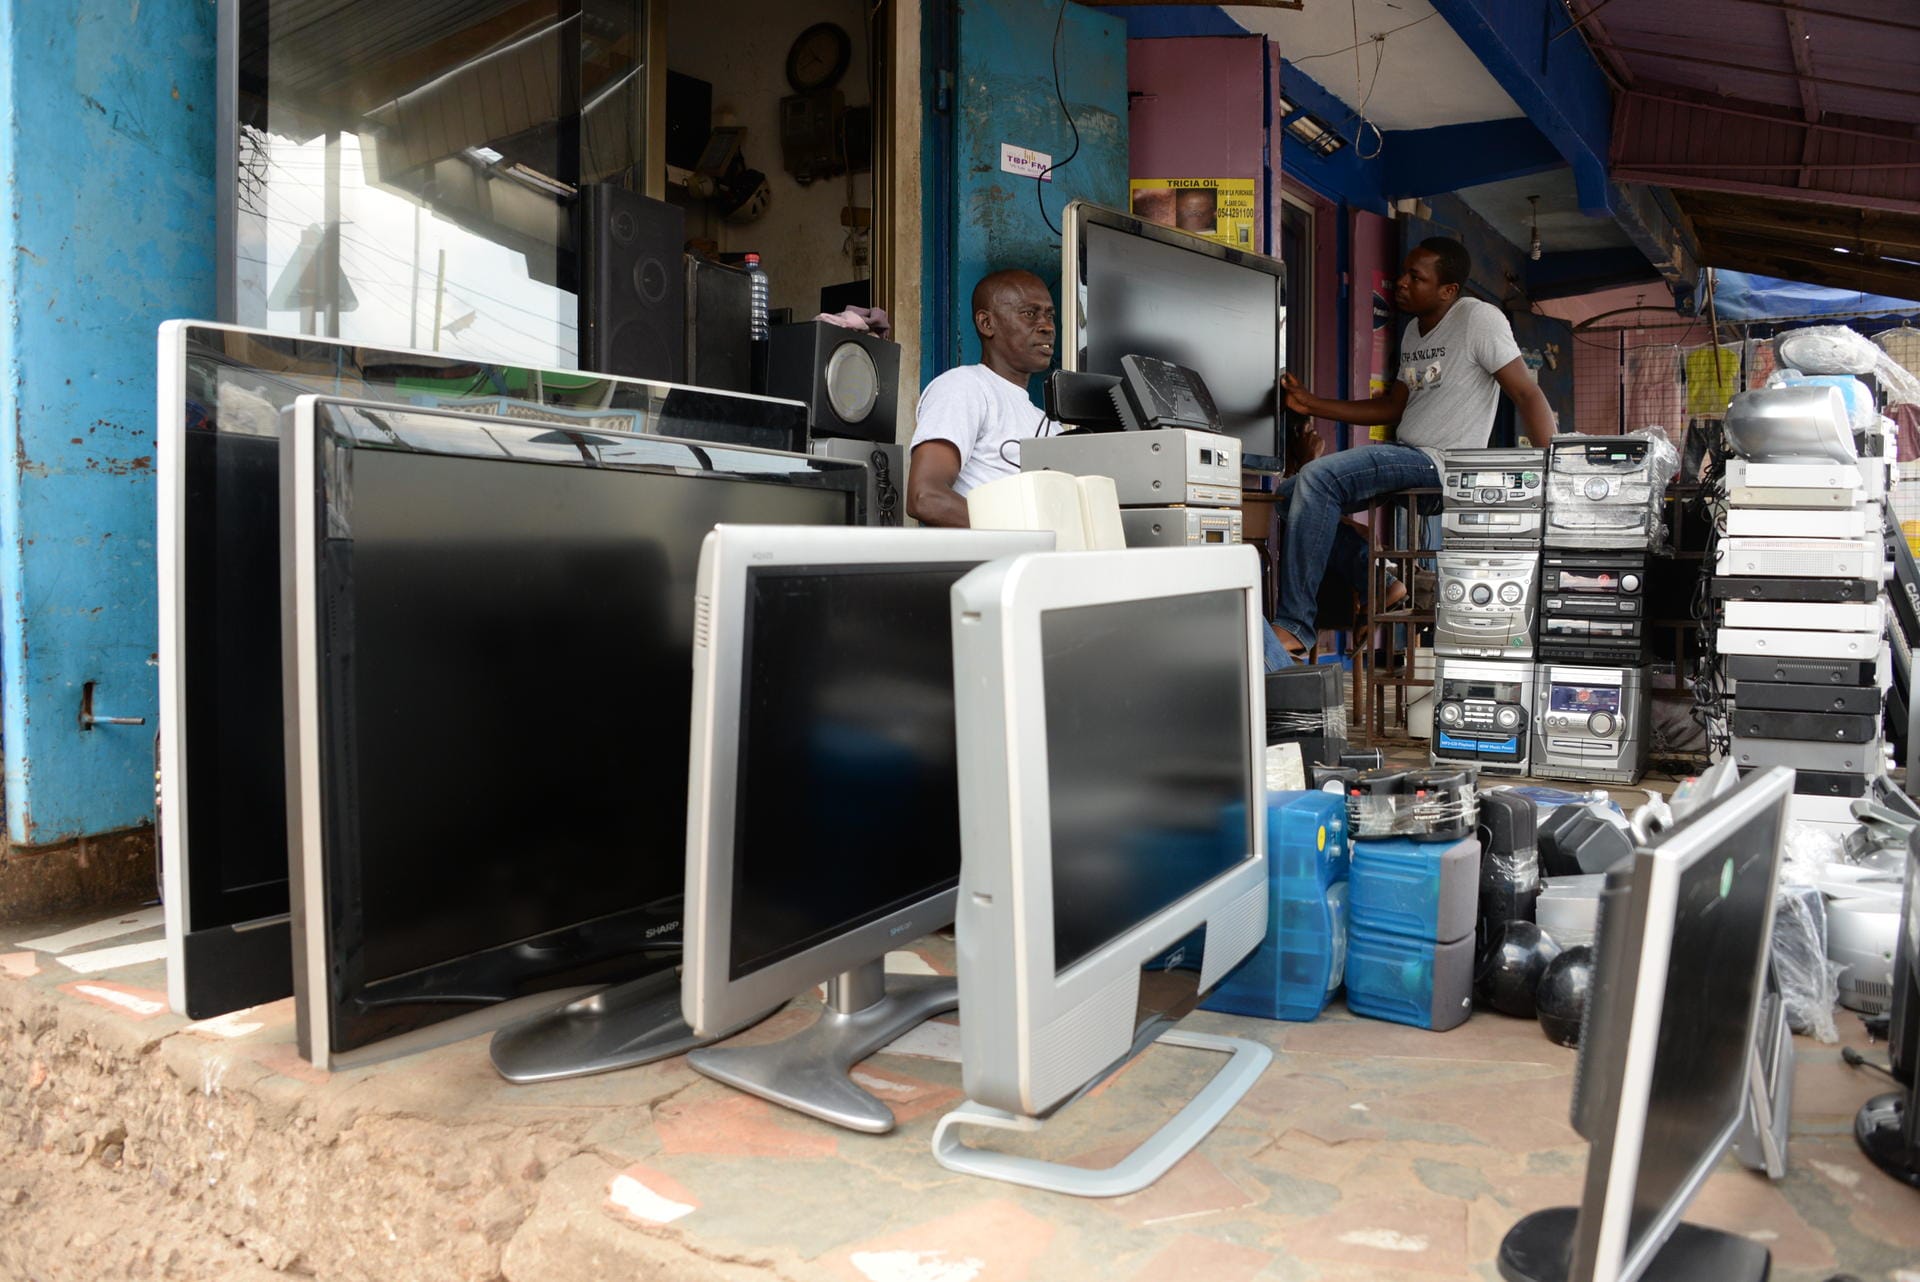 Vor dem Laden eines TV-Händlers in Accra stehen mehrere gebrauchte Fernseher. Die meisten davon wurden vor allem aus Großbritannien.